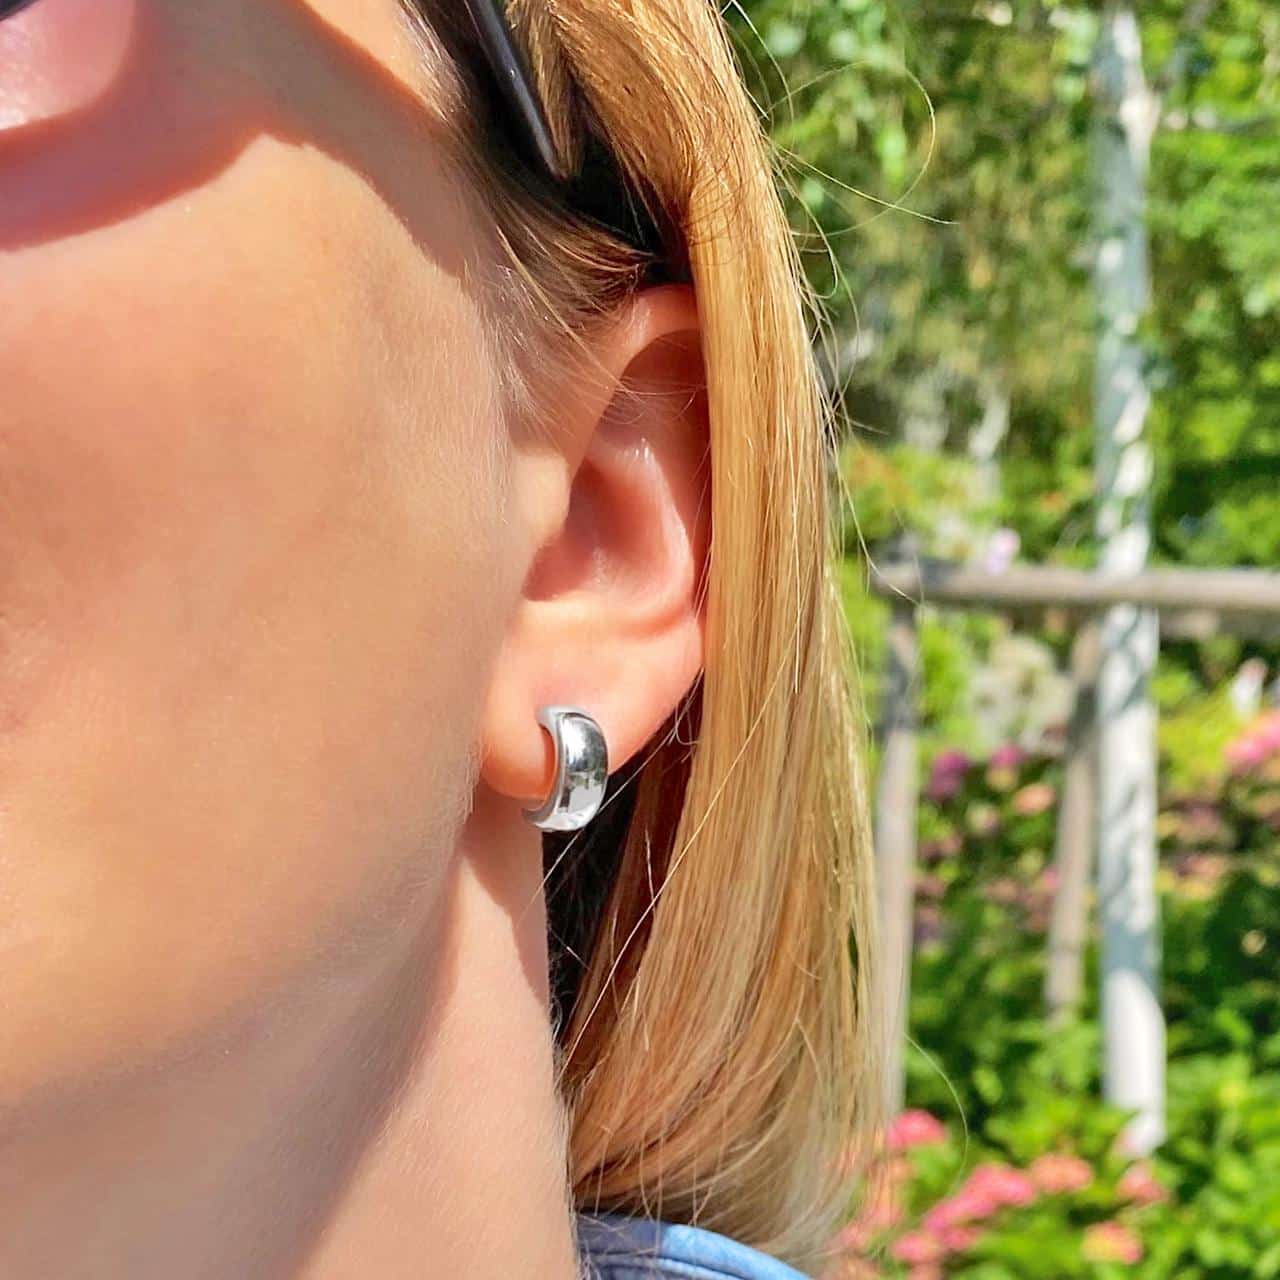 Polierte Ohrringe aus Sterling Silber 925 mit gewölbter Oberfläche in den Schweizer Bergen getragen 